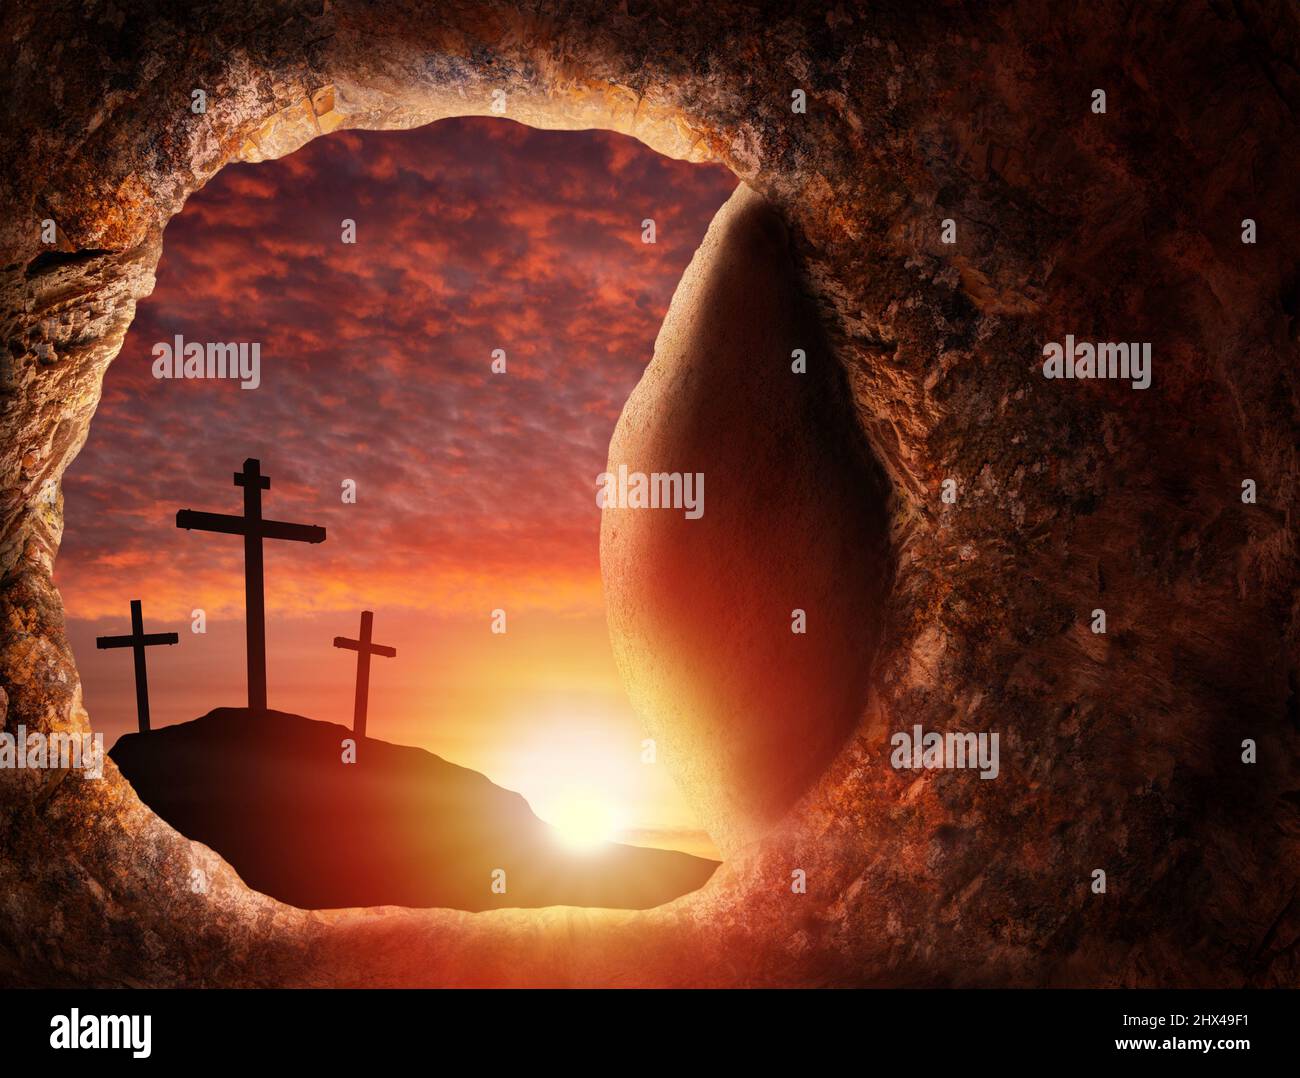 Vendredi Saint Pâques concept de Jésus résurrection de la tombe vide dans une grotte funéraire avec roc roulé ouvert montrant des croix crucifixion au lever du soleil. Banque D'Images